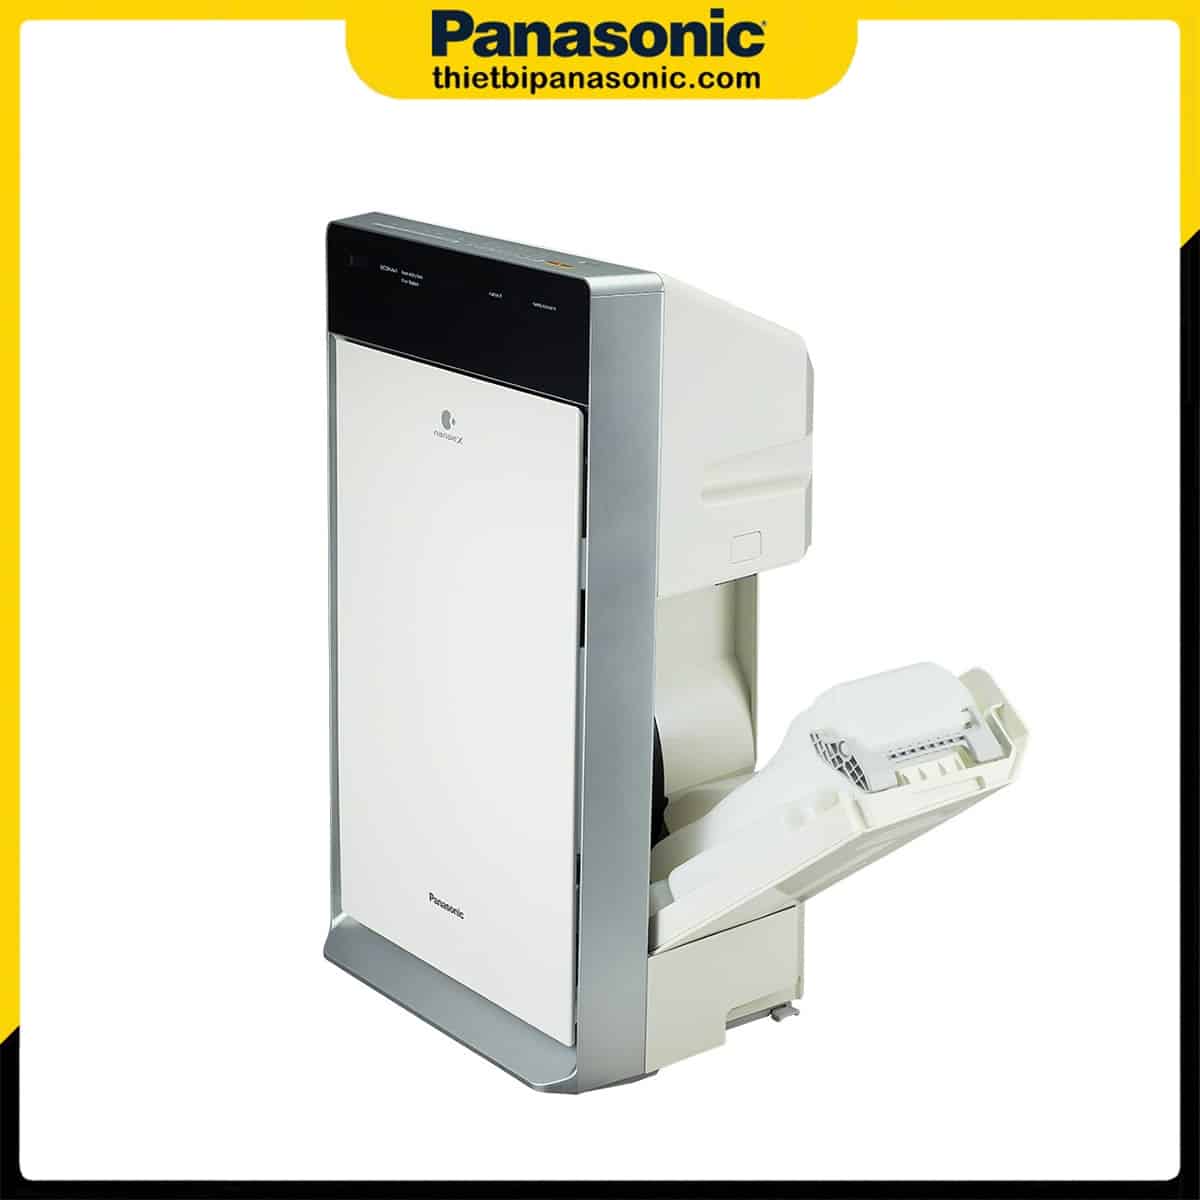 Máy lọc không khí Panasonic F-VXV70A được thiết kế dạng Module nên dễ dàng tháo rời để vệ sinh cũng như bảo dưỡng định kỳ